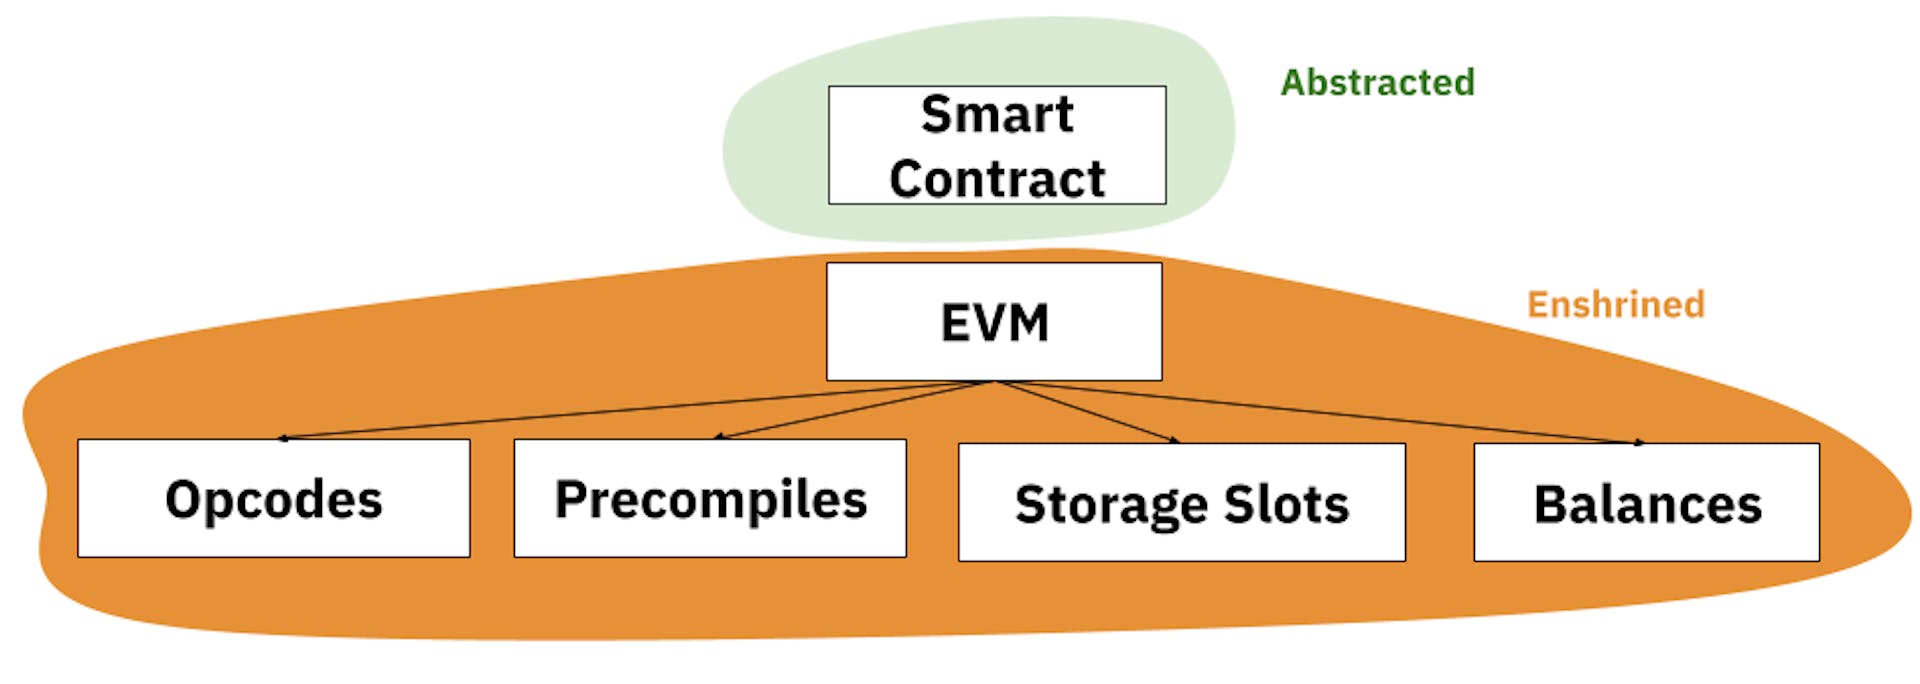 Enshrinement in the EVM model